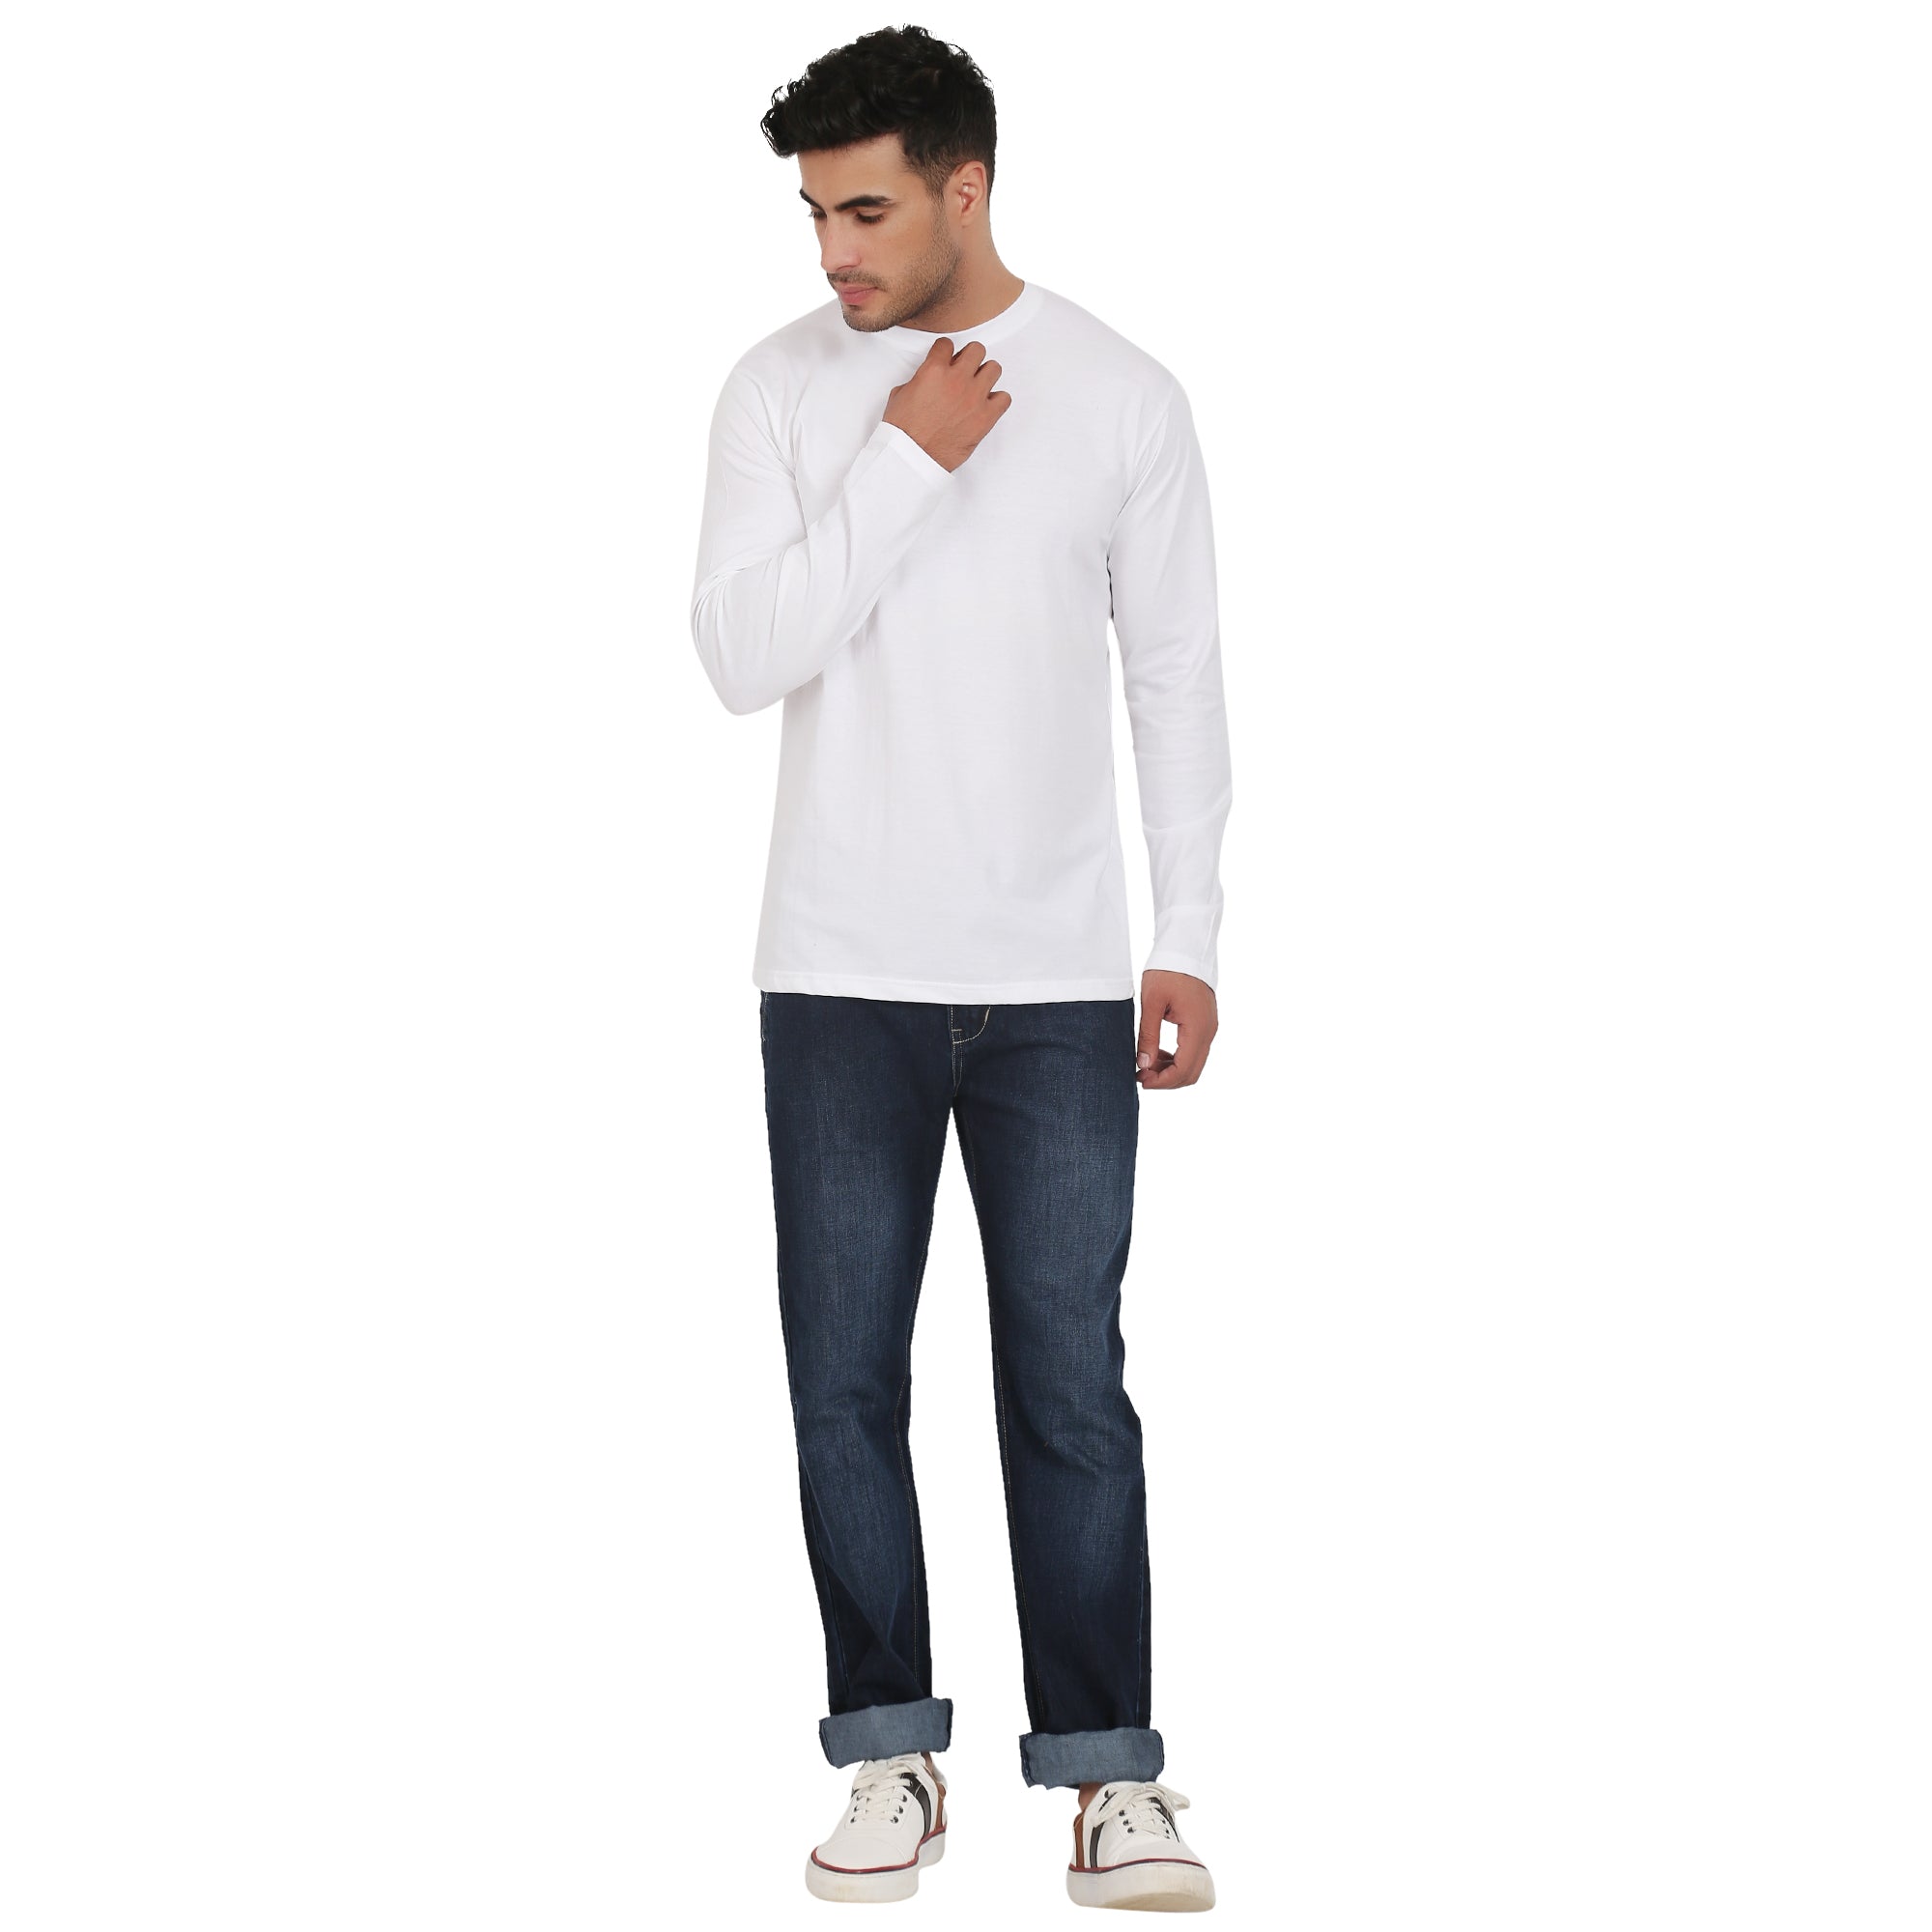 Men Crew Neck Cotton T-Shirts - Full Sleeves, White Colour